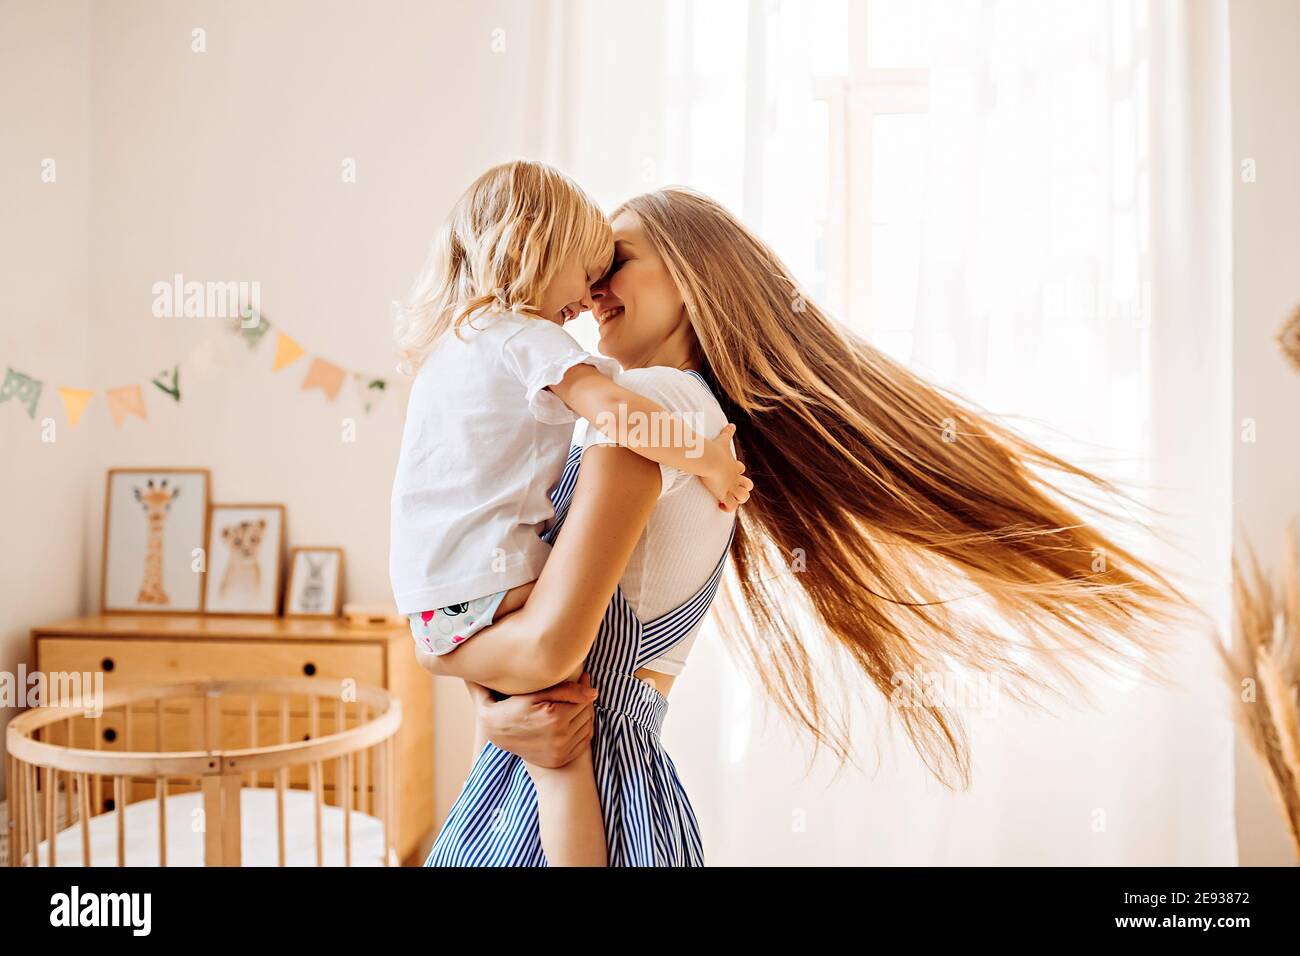 Junge Mutter oder Babysitter mit einem kleinen Mädchen in ihr Die Arme drehen sich in der Mitte des Raumes Stockfoto